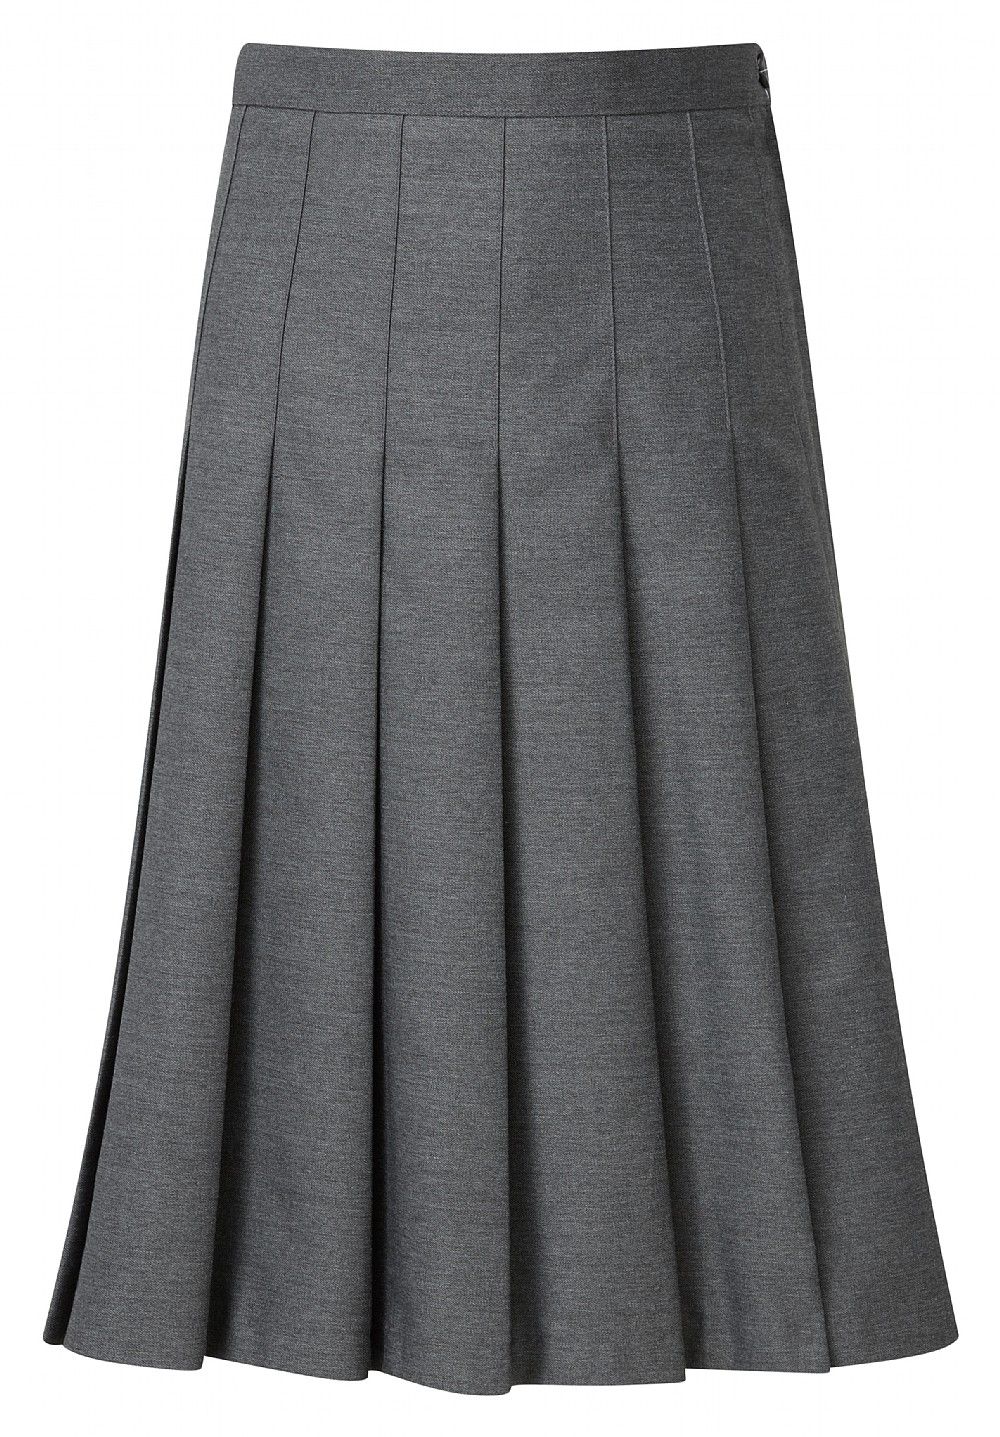 holy trinity pleated skirt